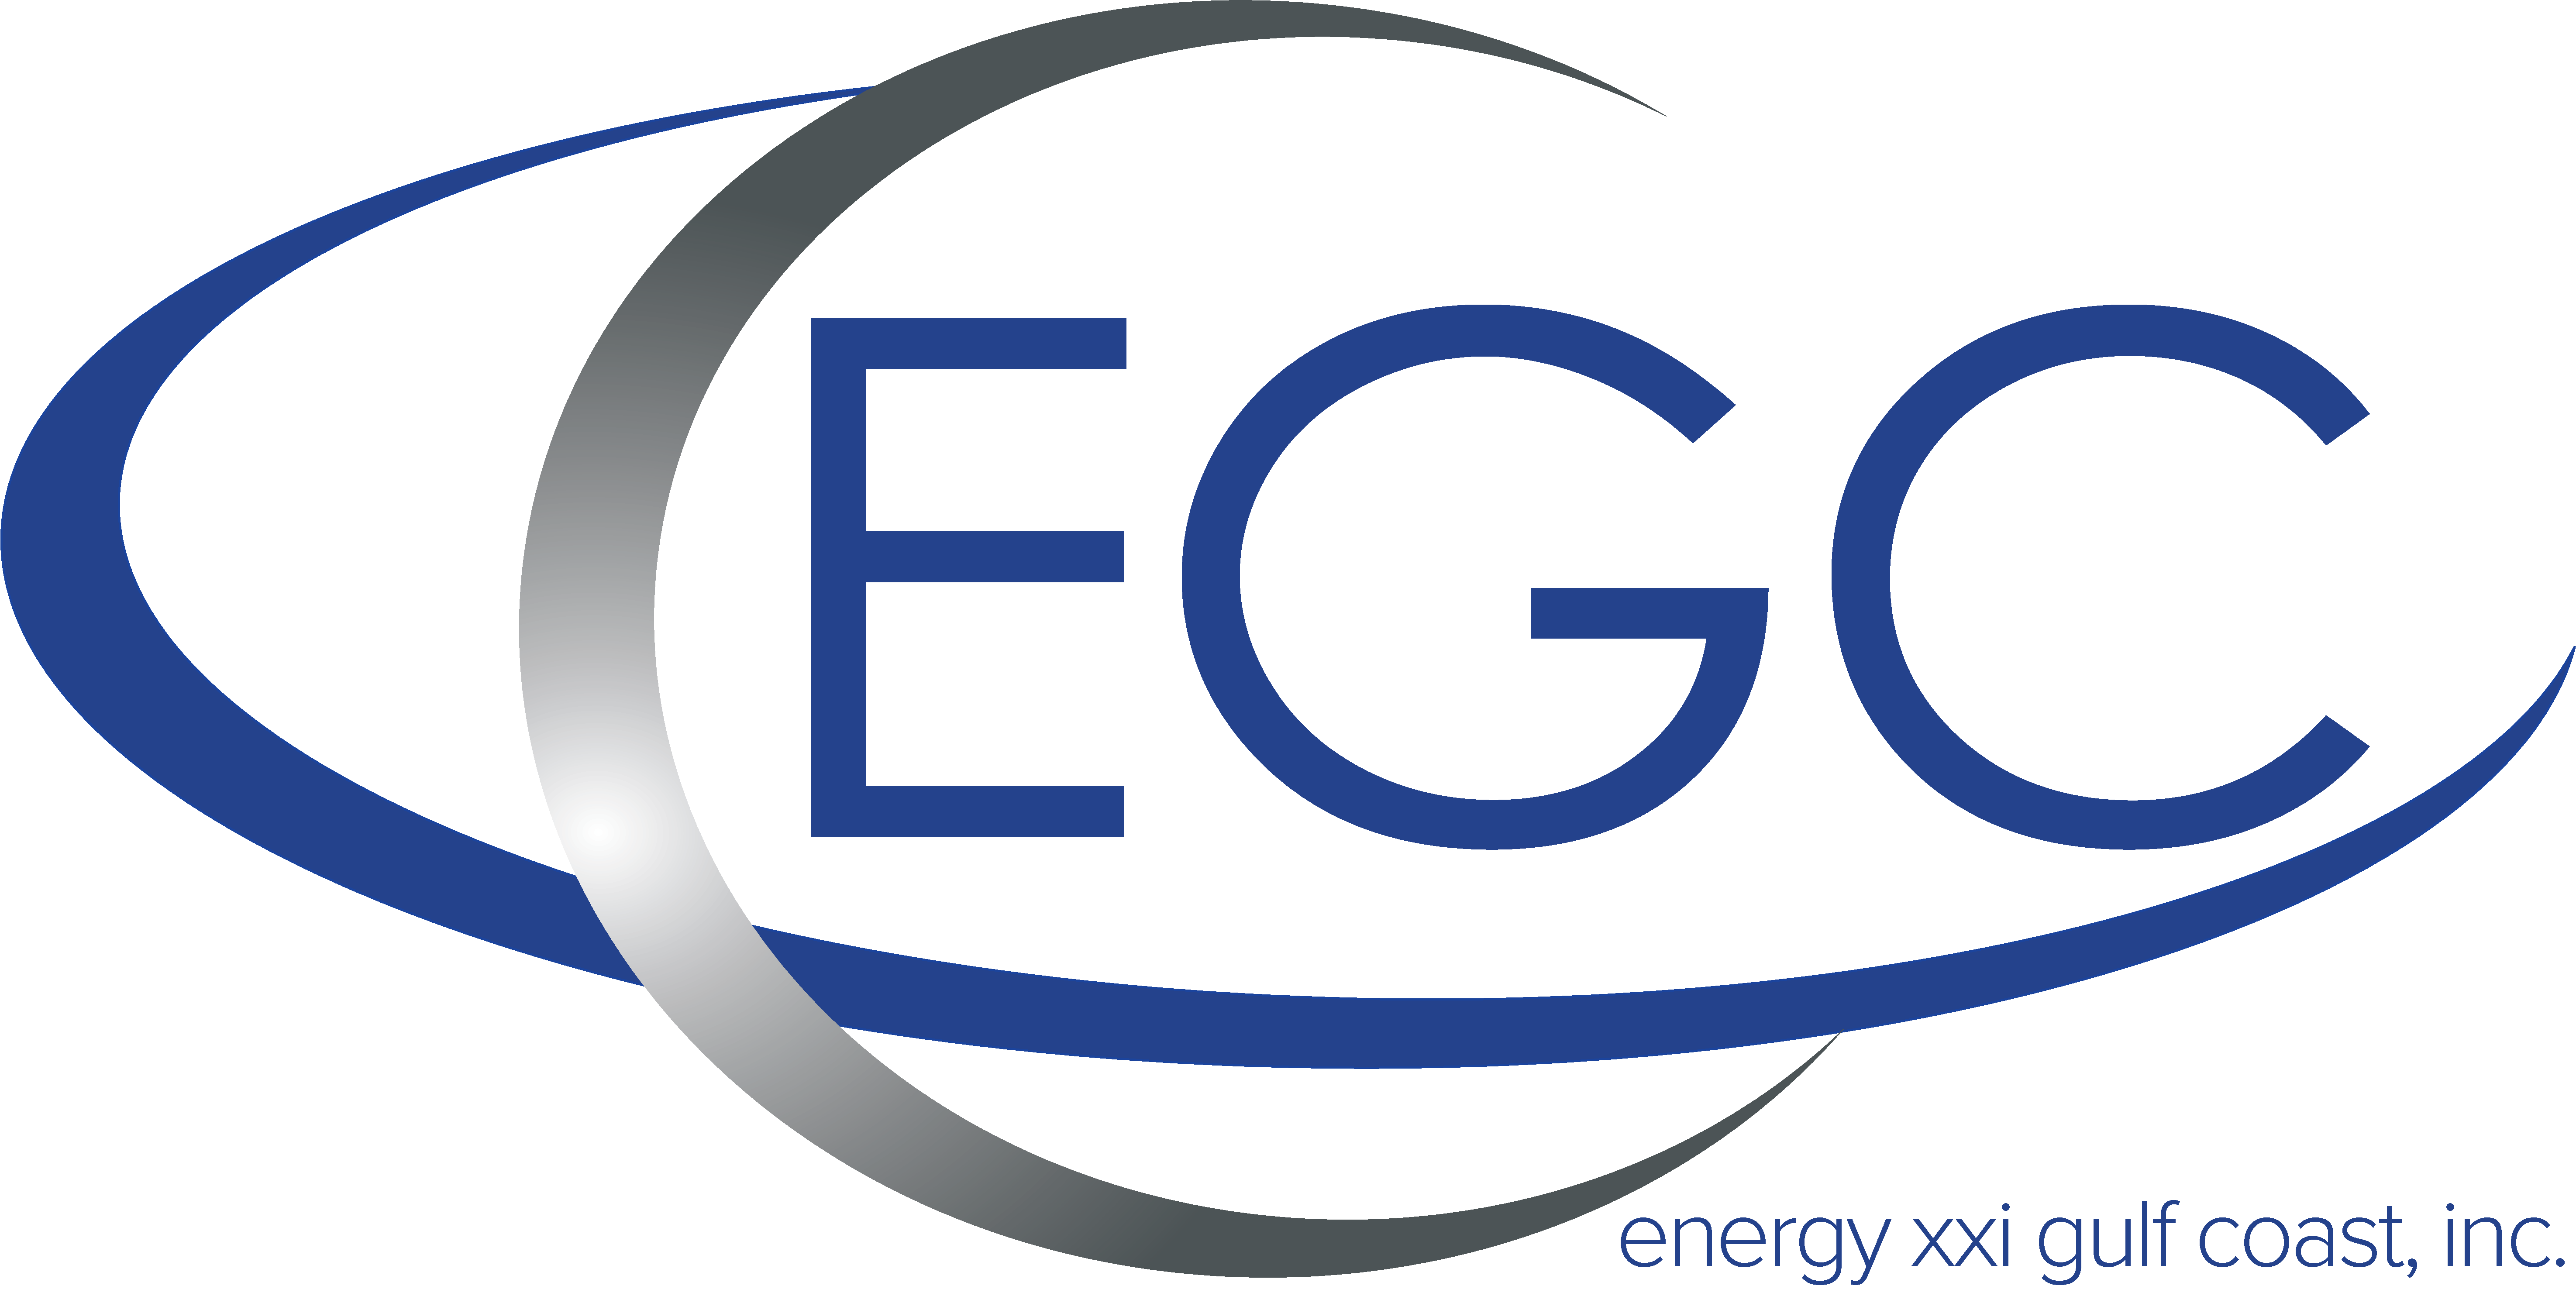 EGC Logo 2018 for PR.png